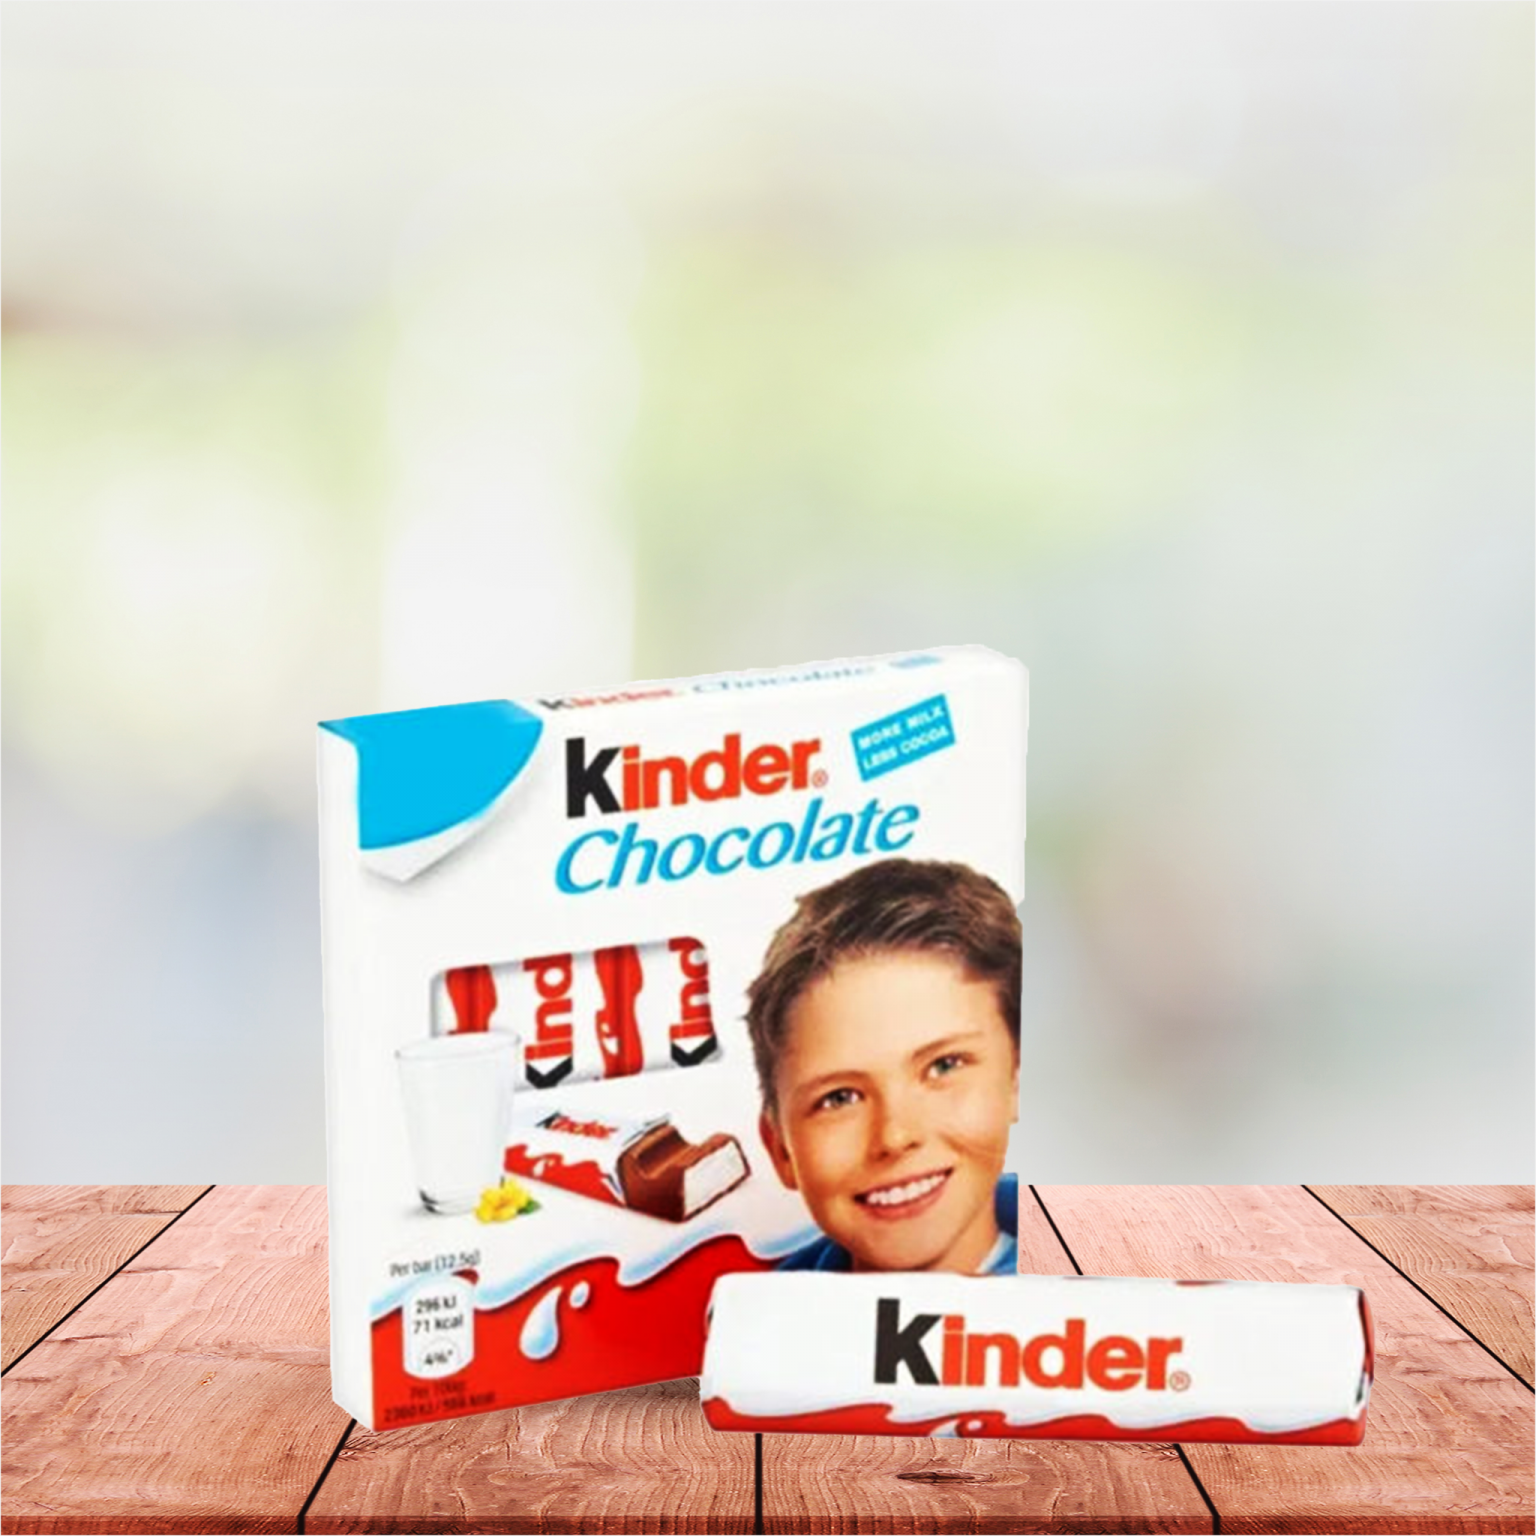 Kinder -كيندر -ماجيك ستور -magic stores